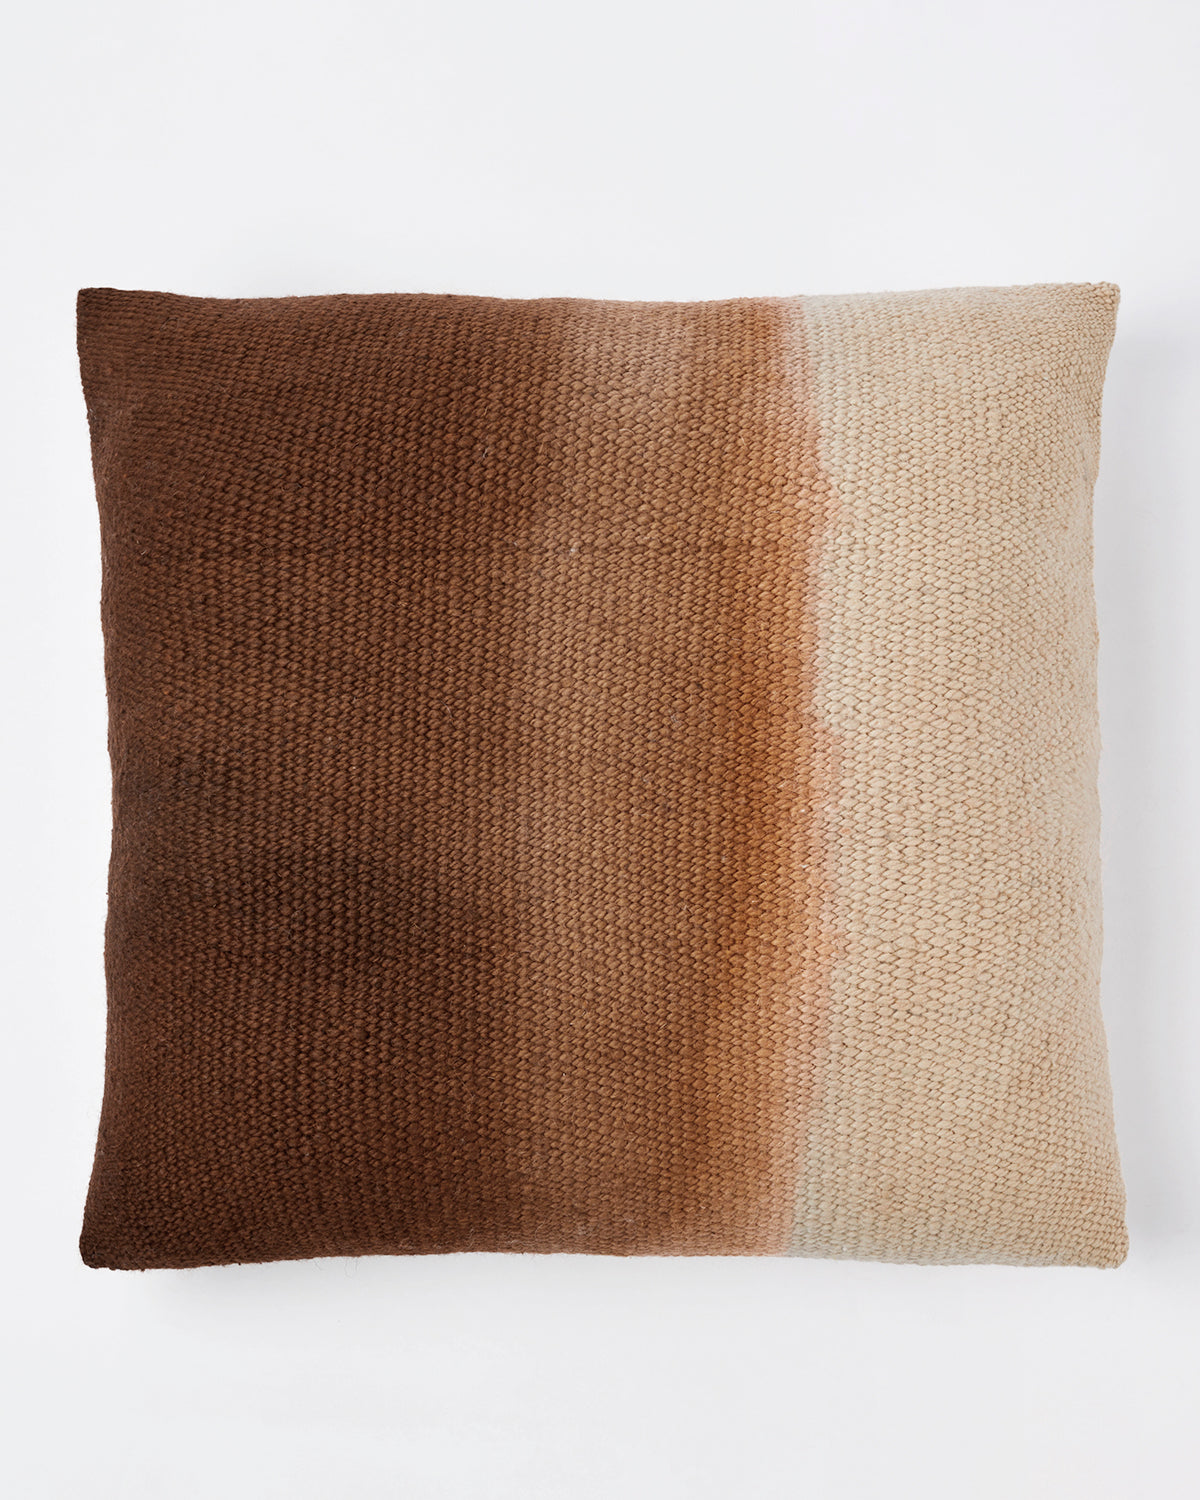 Matiz Brown Ombre Wool Throw Pillow